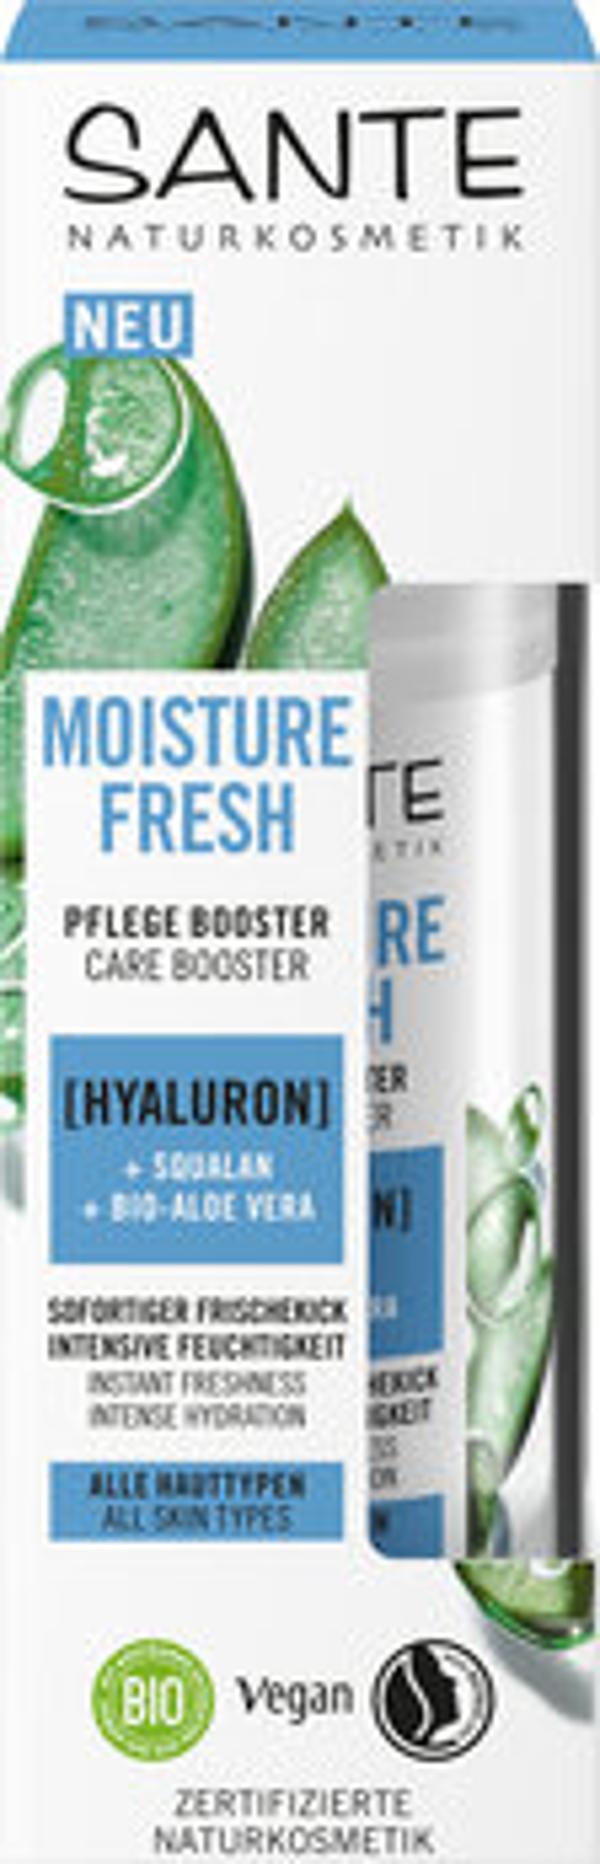 Produktfoto zu Moisture Fresh Pflege Booster Hyaluron 50ml